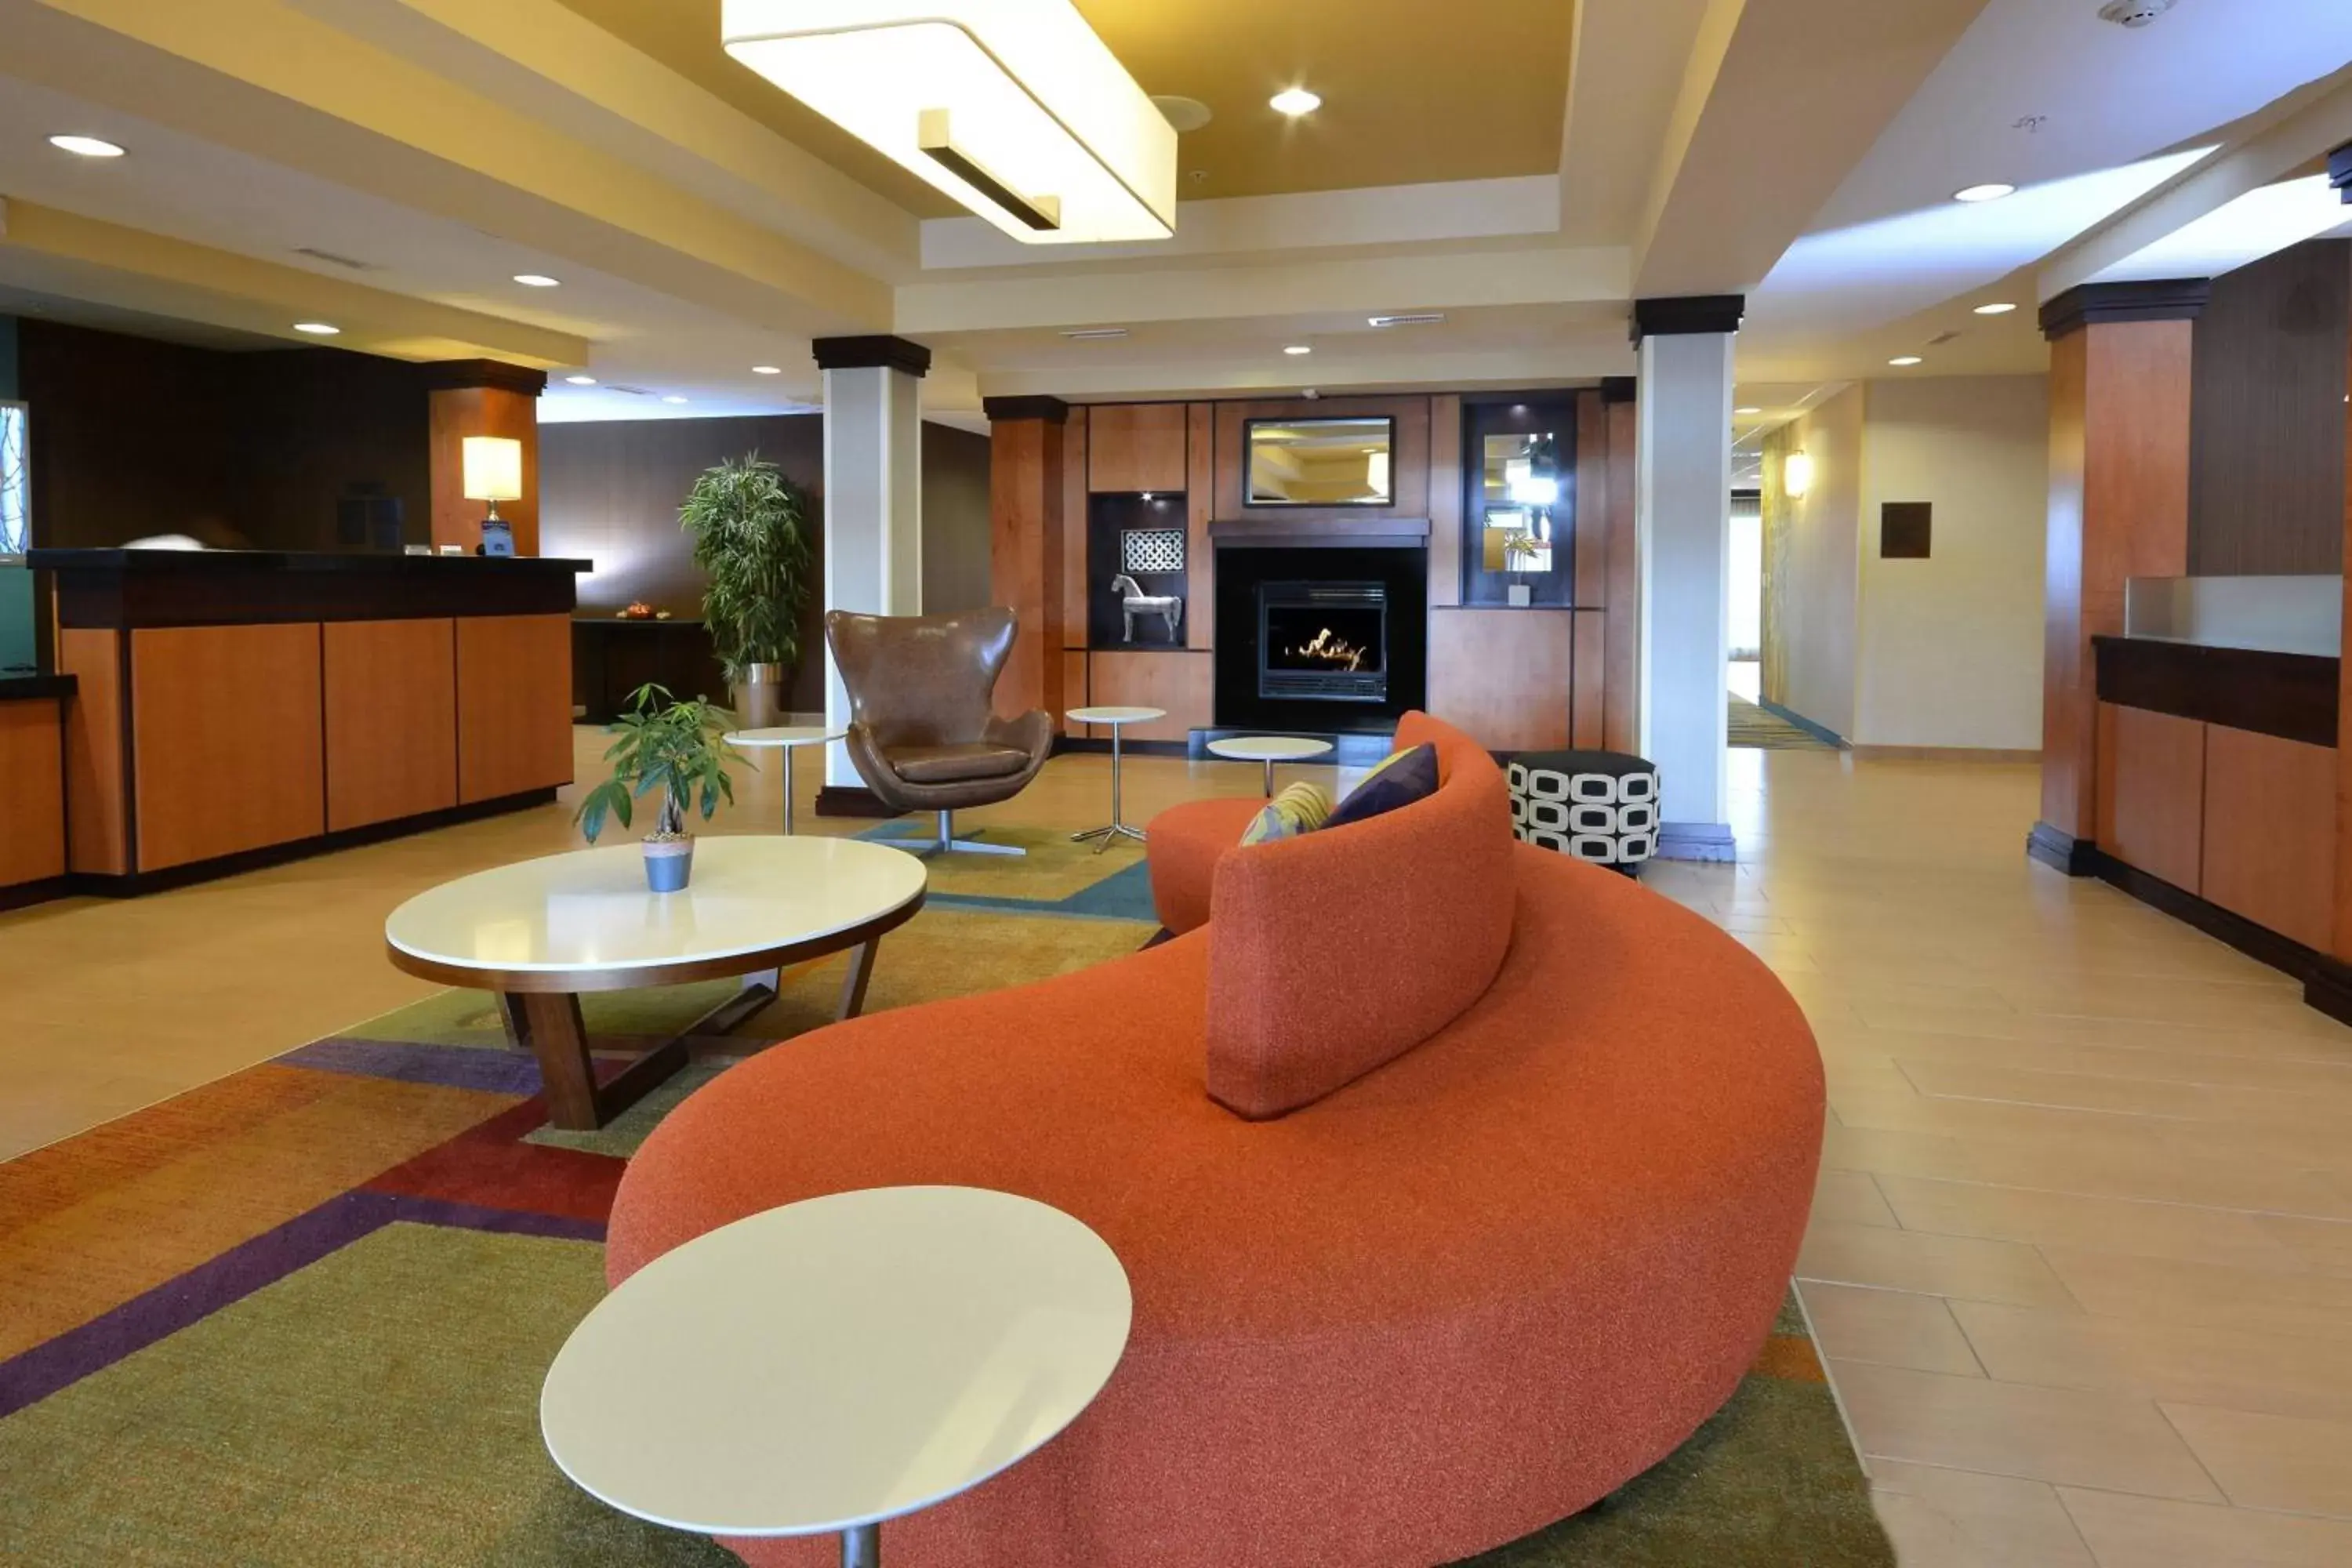 Lobby or reception, Lobby/Reception in Fairfield Inn & Suites Wytheville